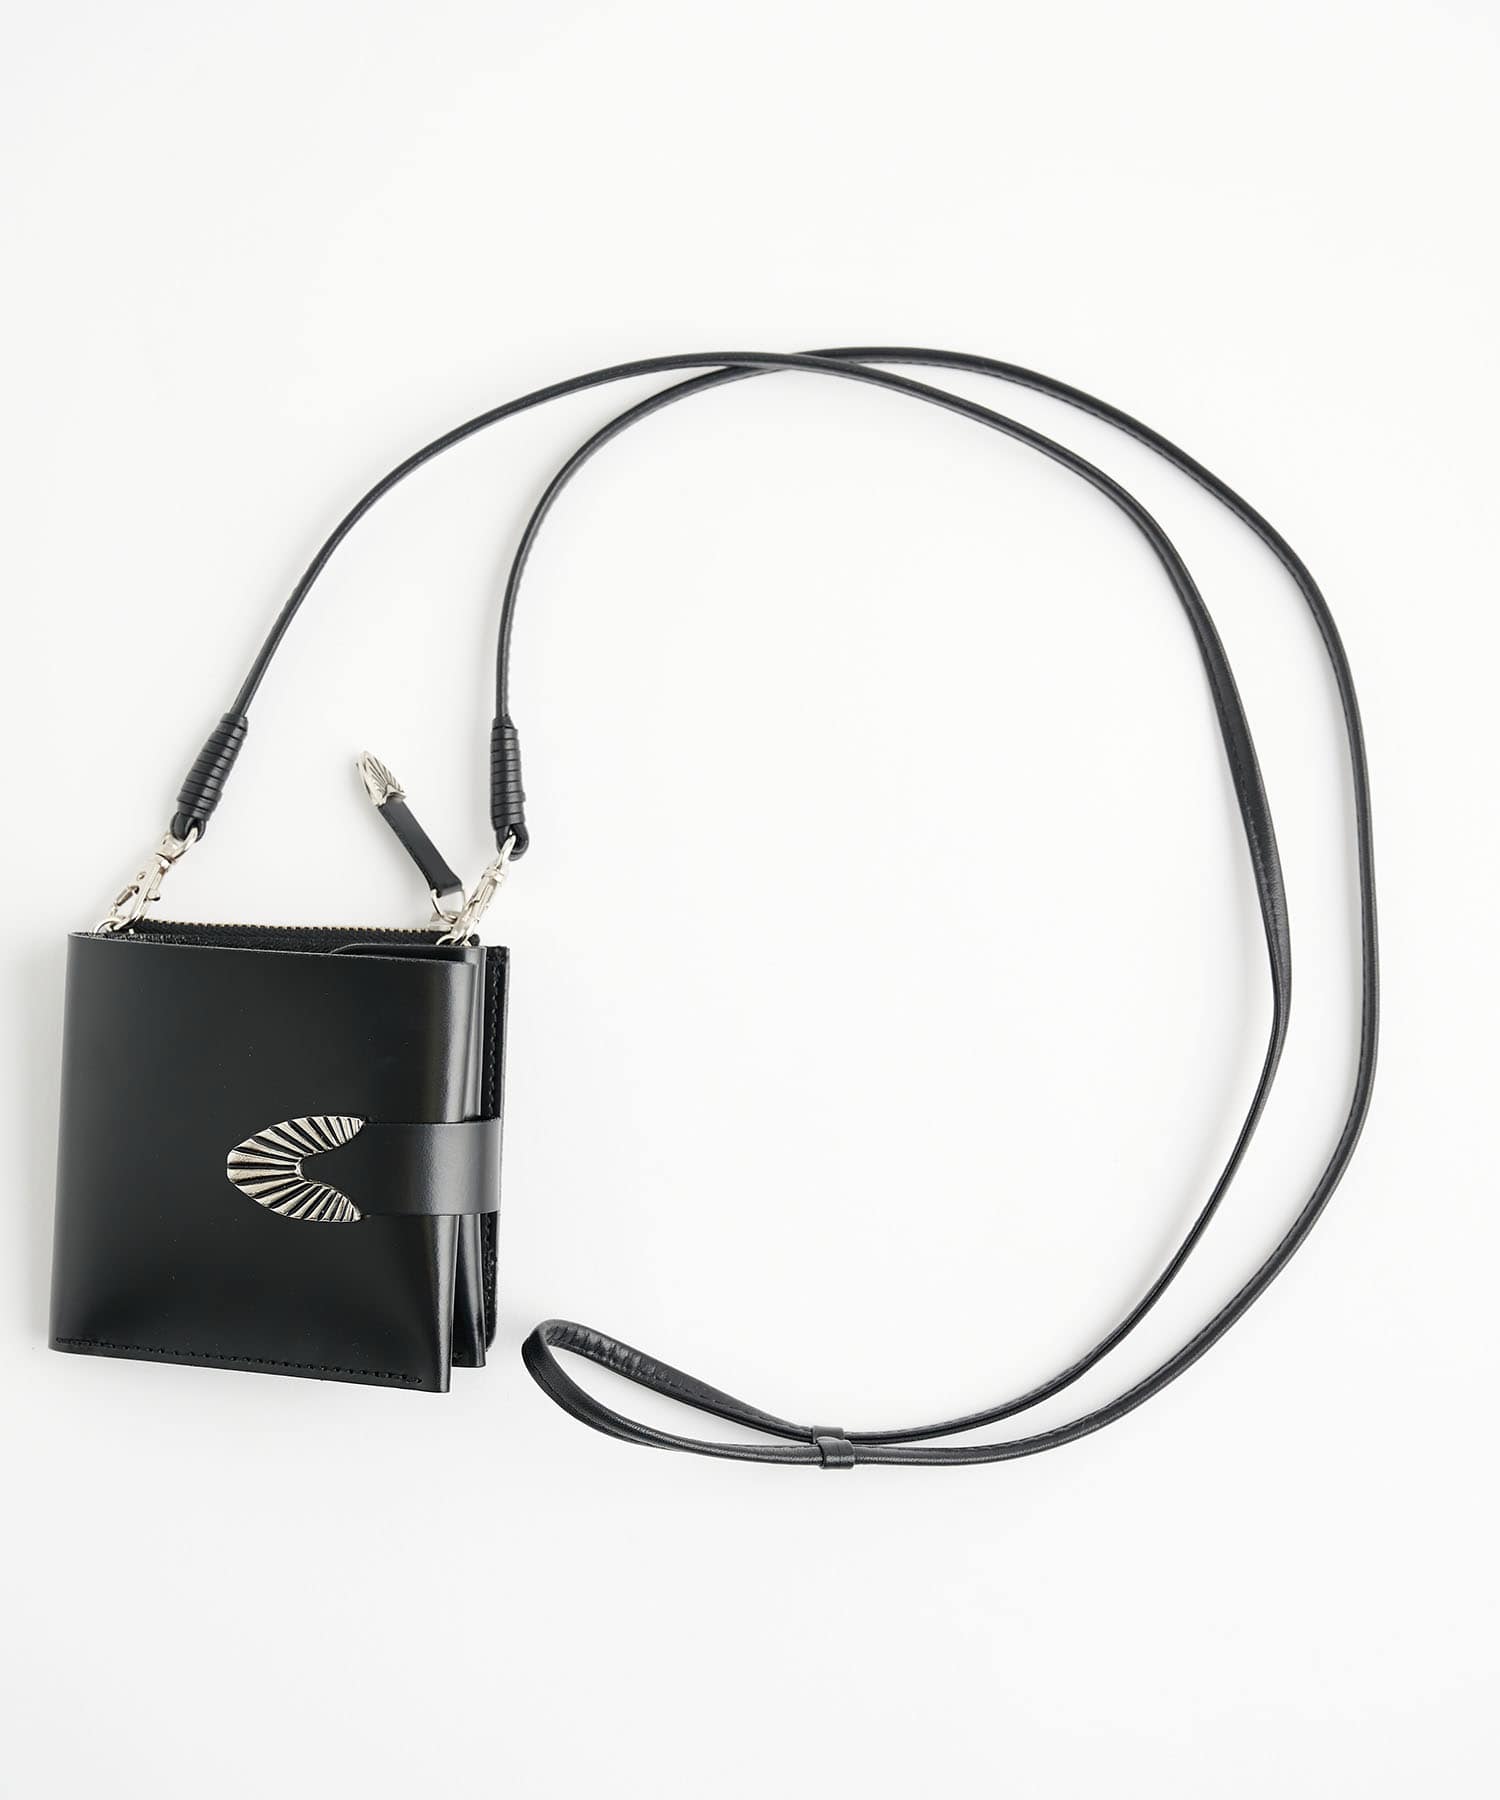 Leather shoulder wallet